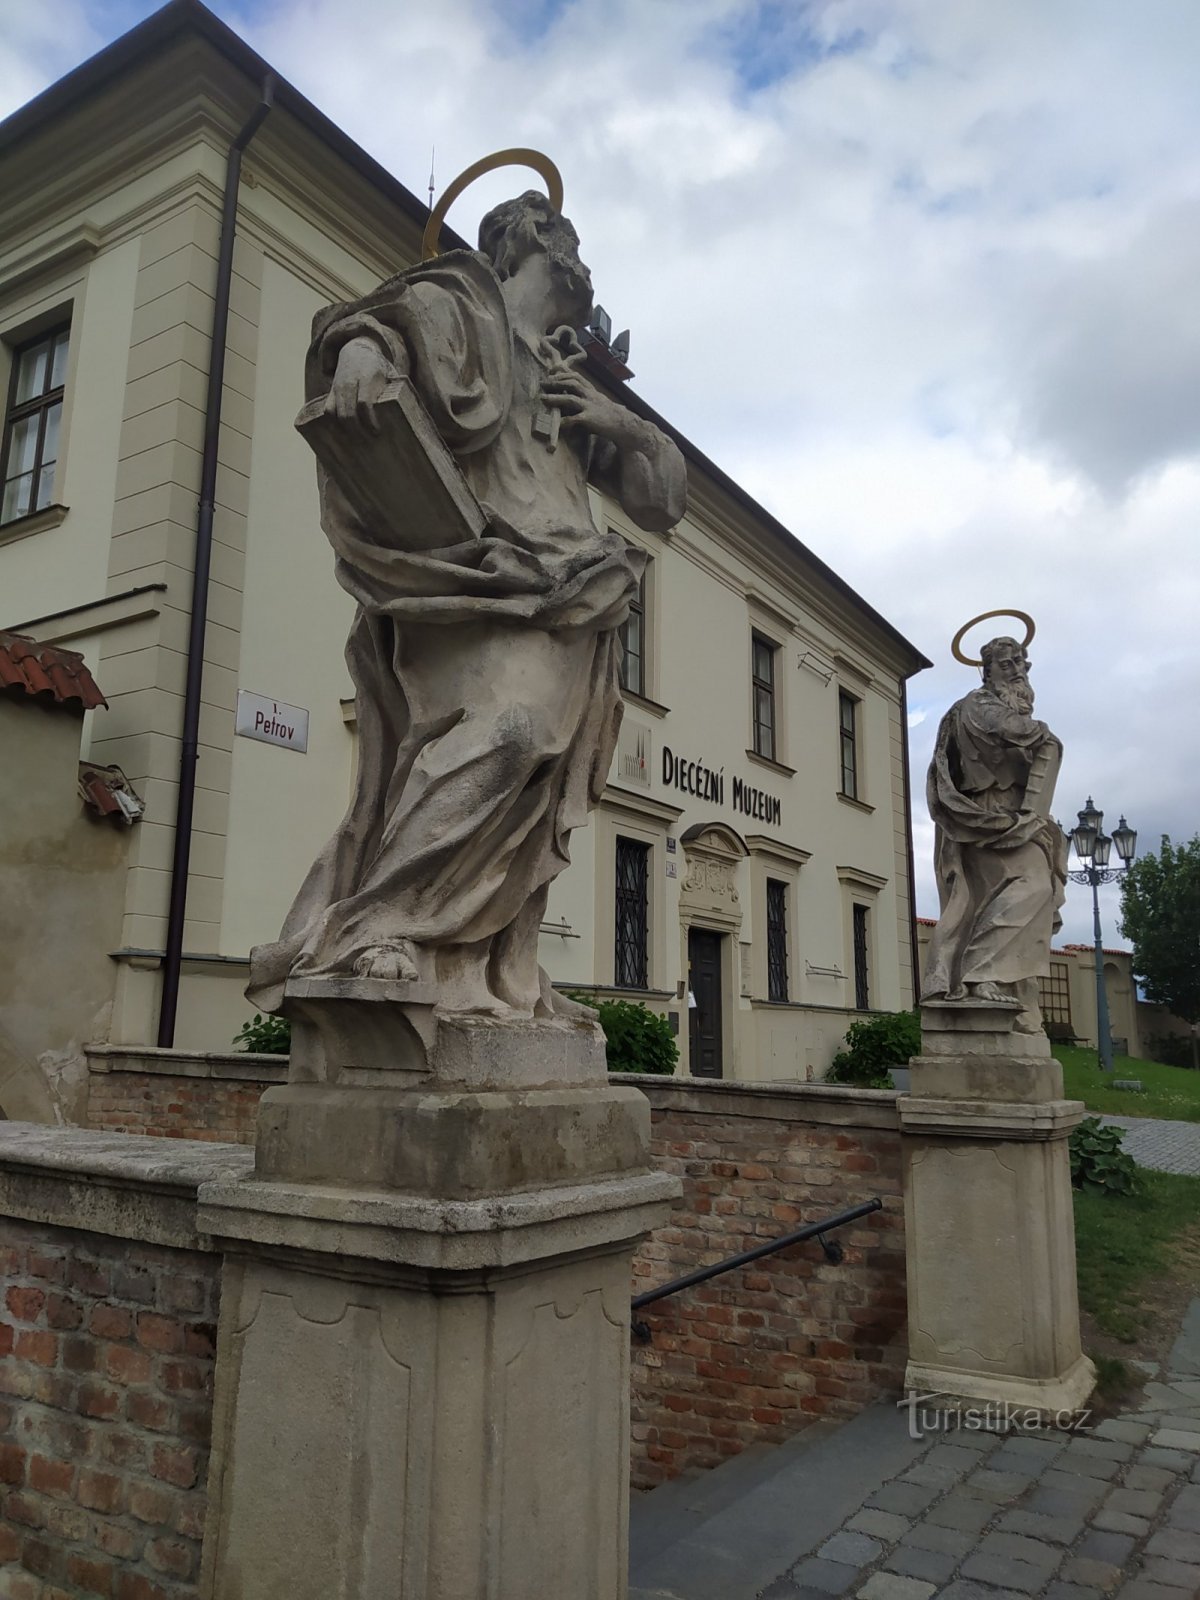 ブルノ、ペトロフ、聖ペトロフの像ピーターとポール